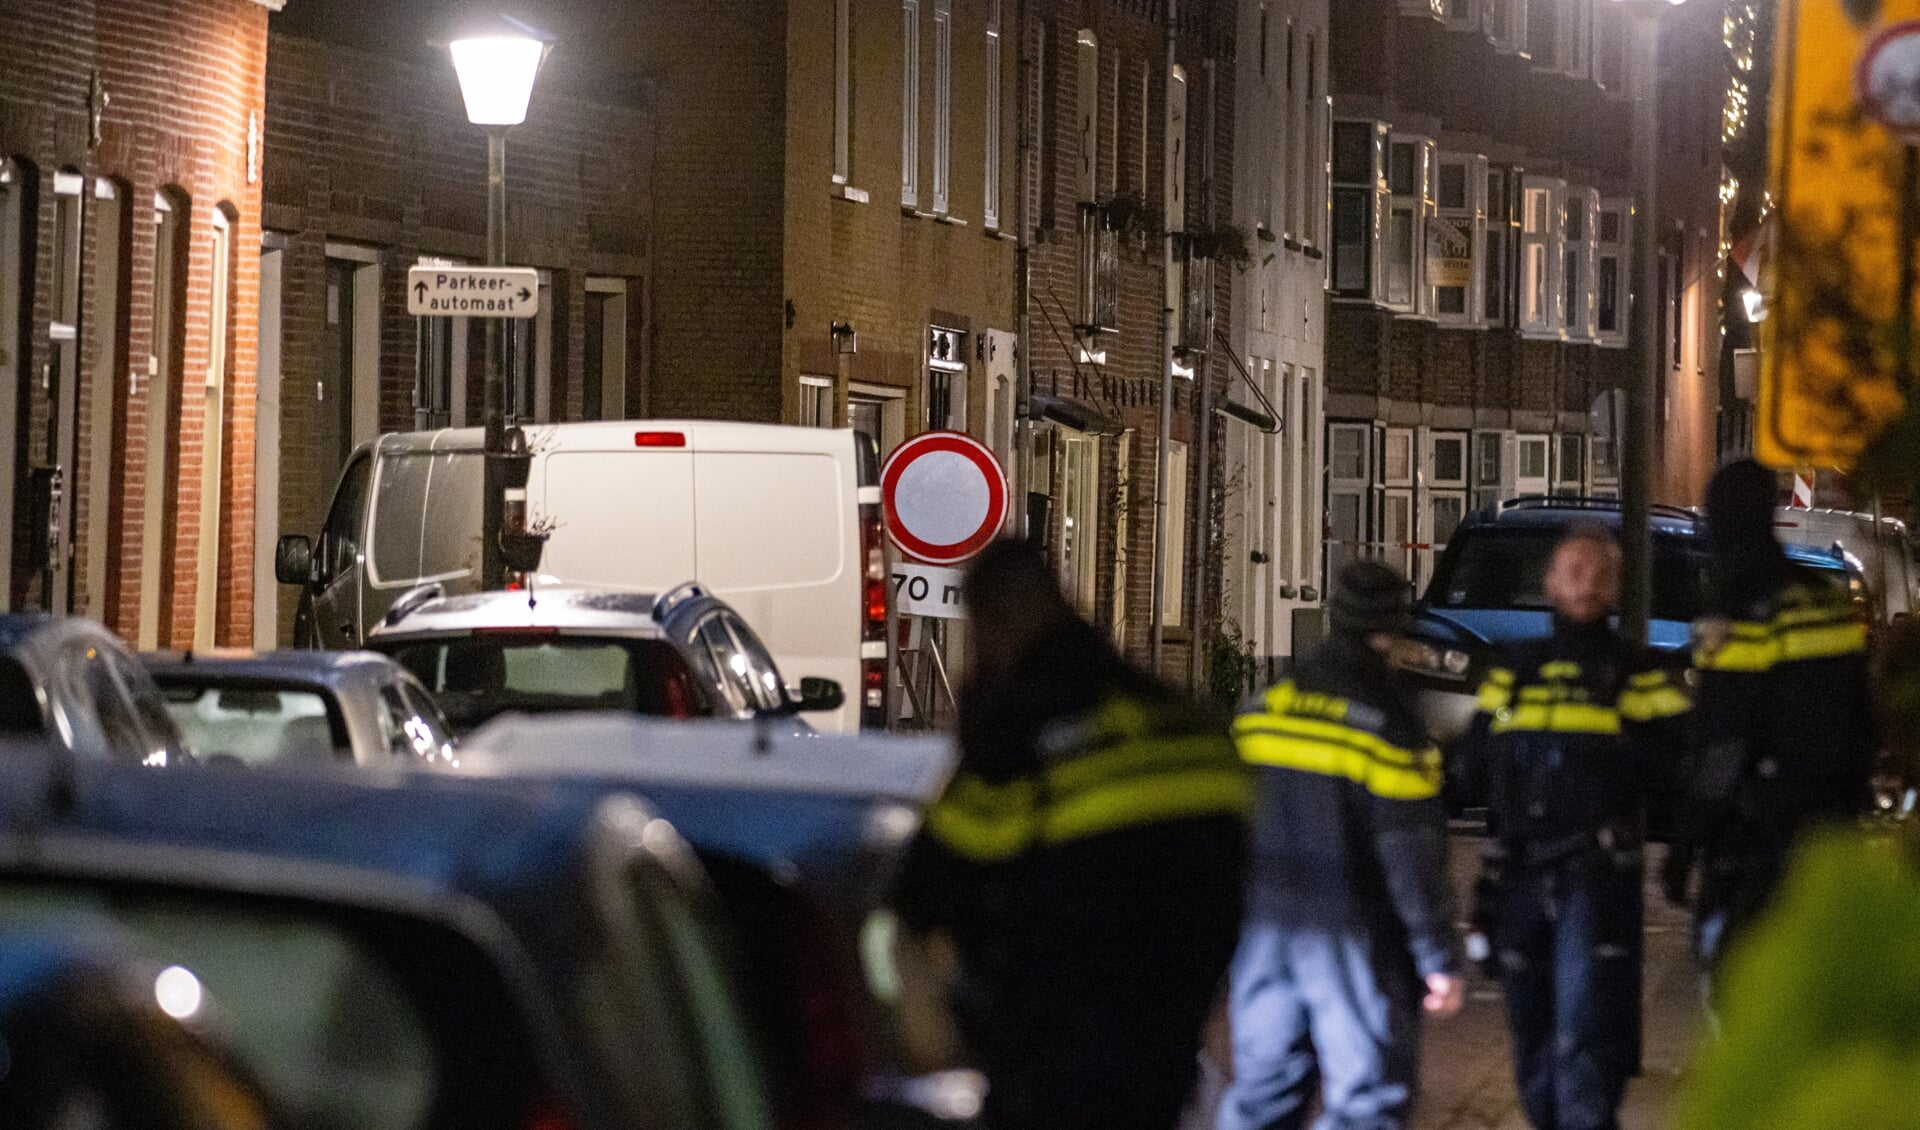 Vier aanhoudingen en explosief in bestelbus gevonden na verdachte situatie Bleekstraat Vlaardingen